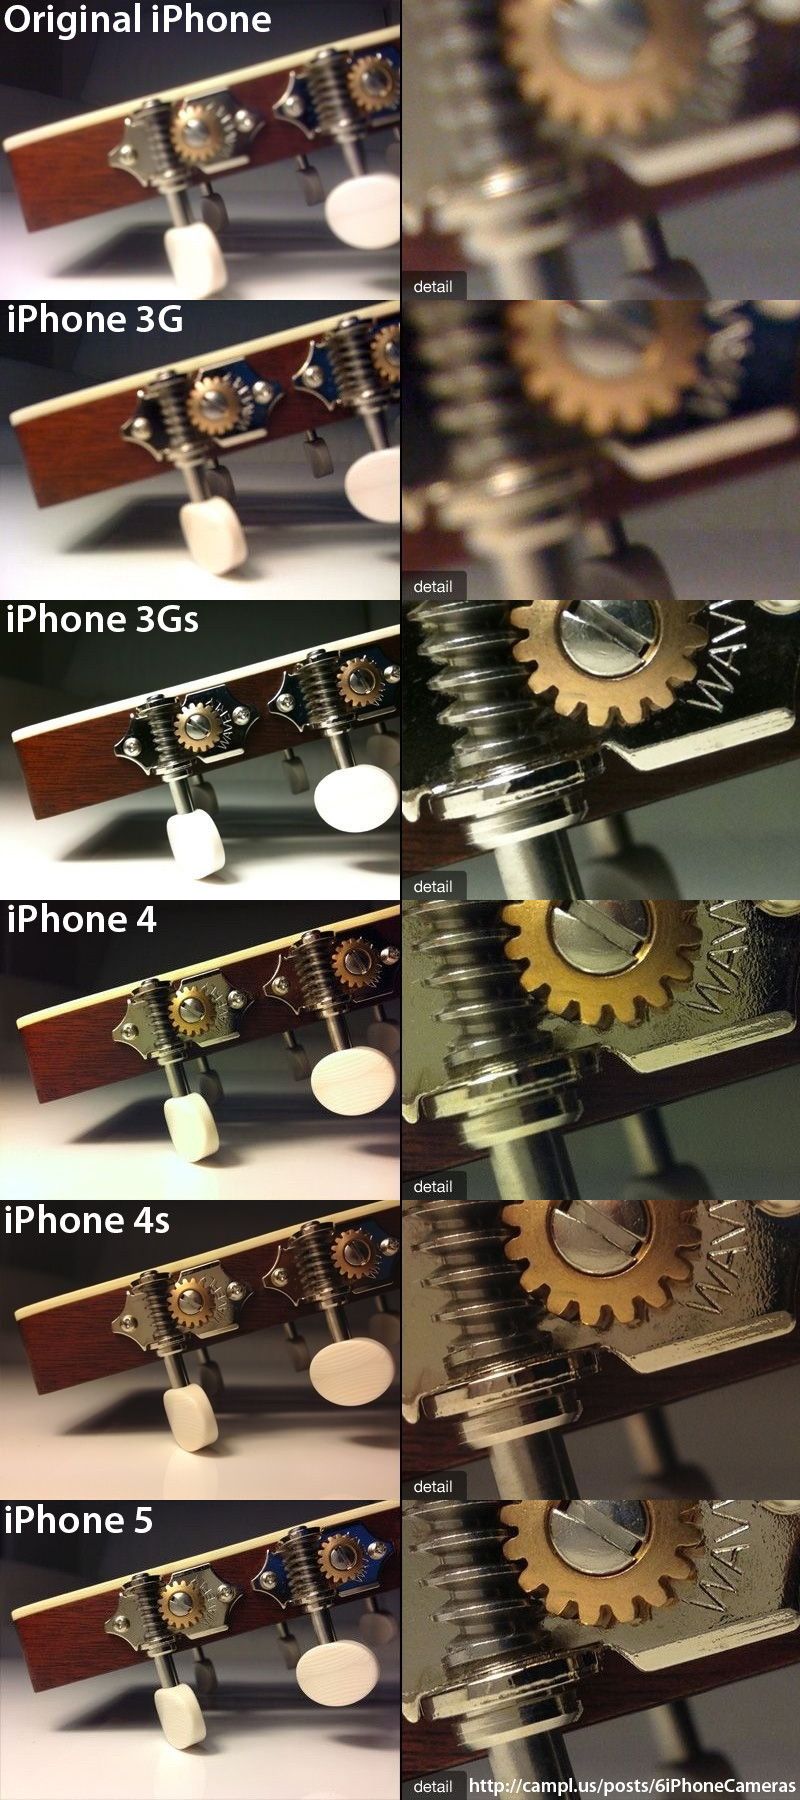  evolucion camara iphoneEvolución de la calidad de la cámara de iPhone